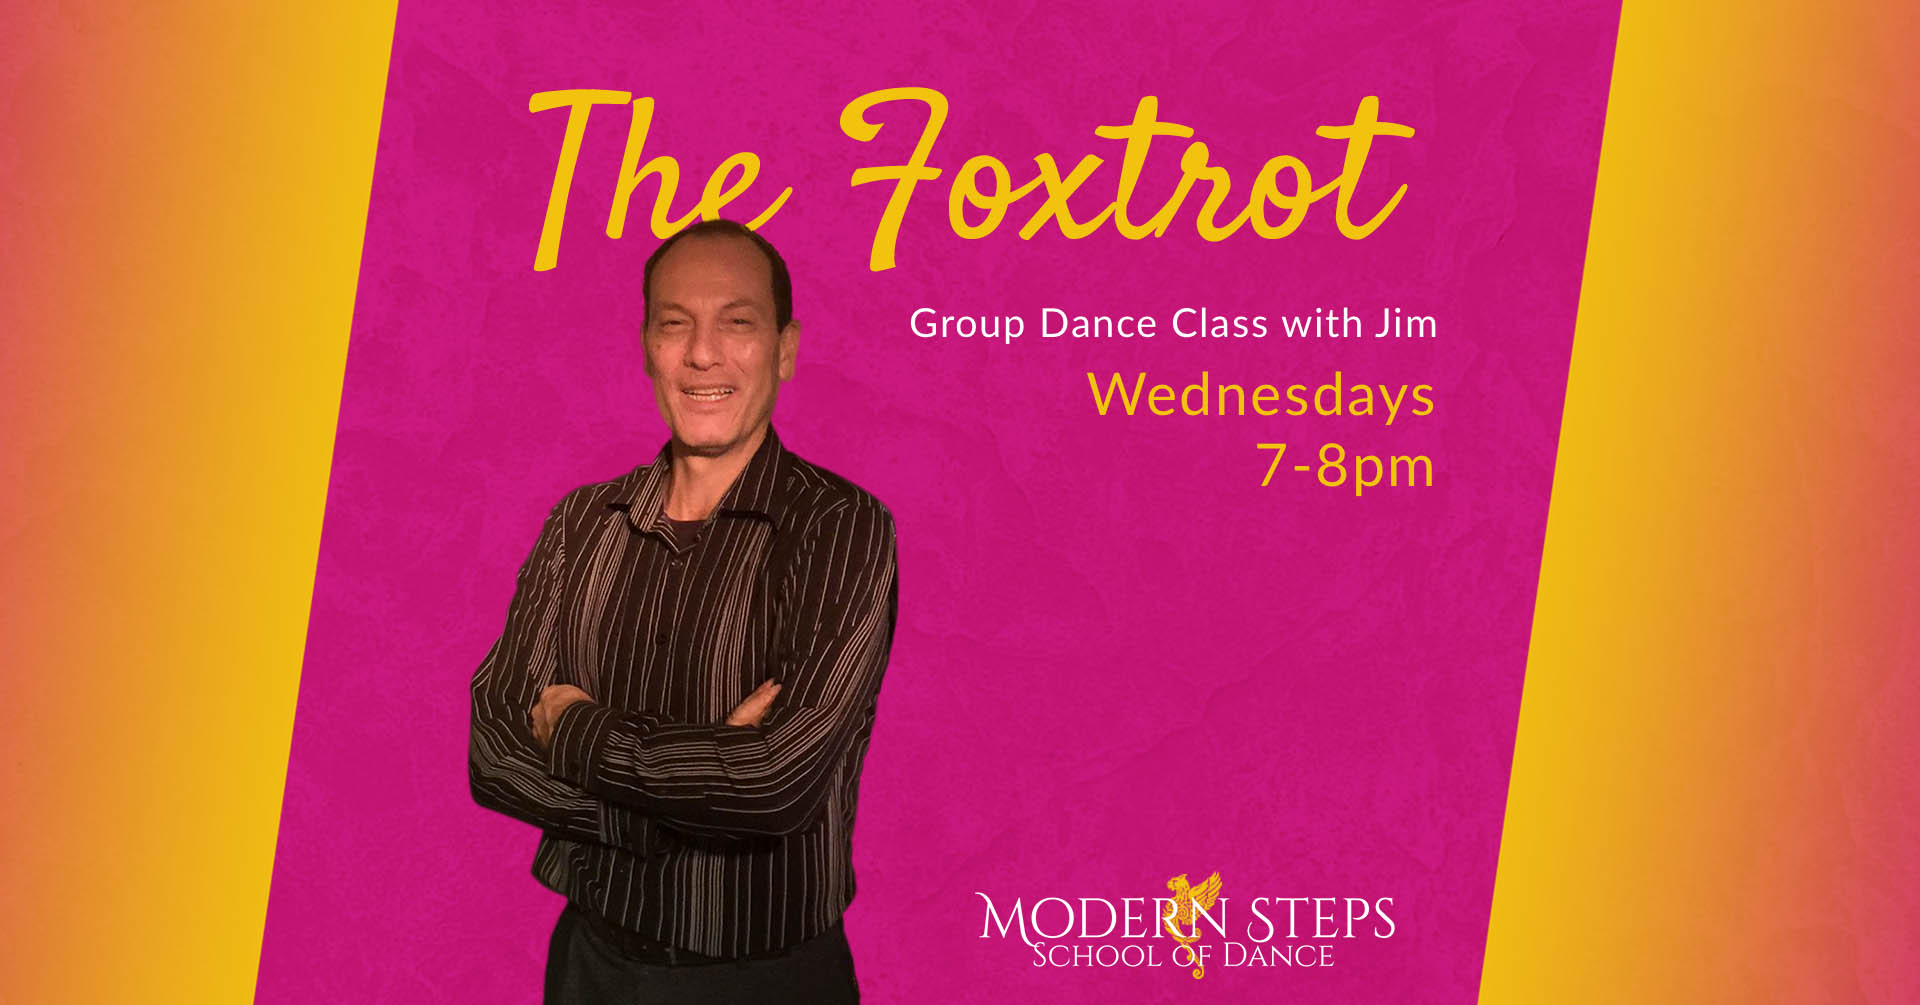 Naples Ballroom Dance Lessons - The Foxtrot - Modern Steps School of Dance - Naples Florida